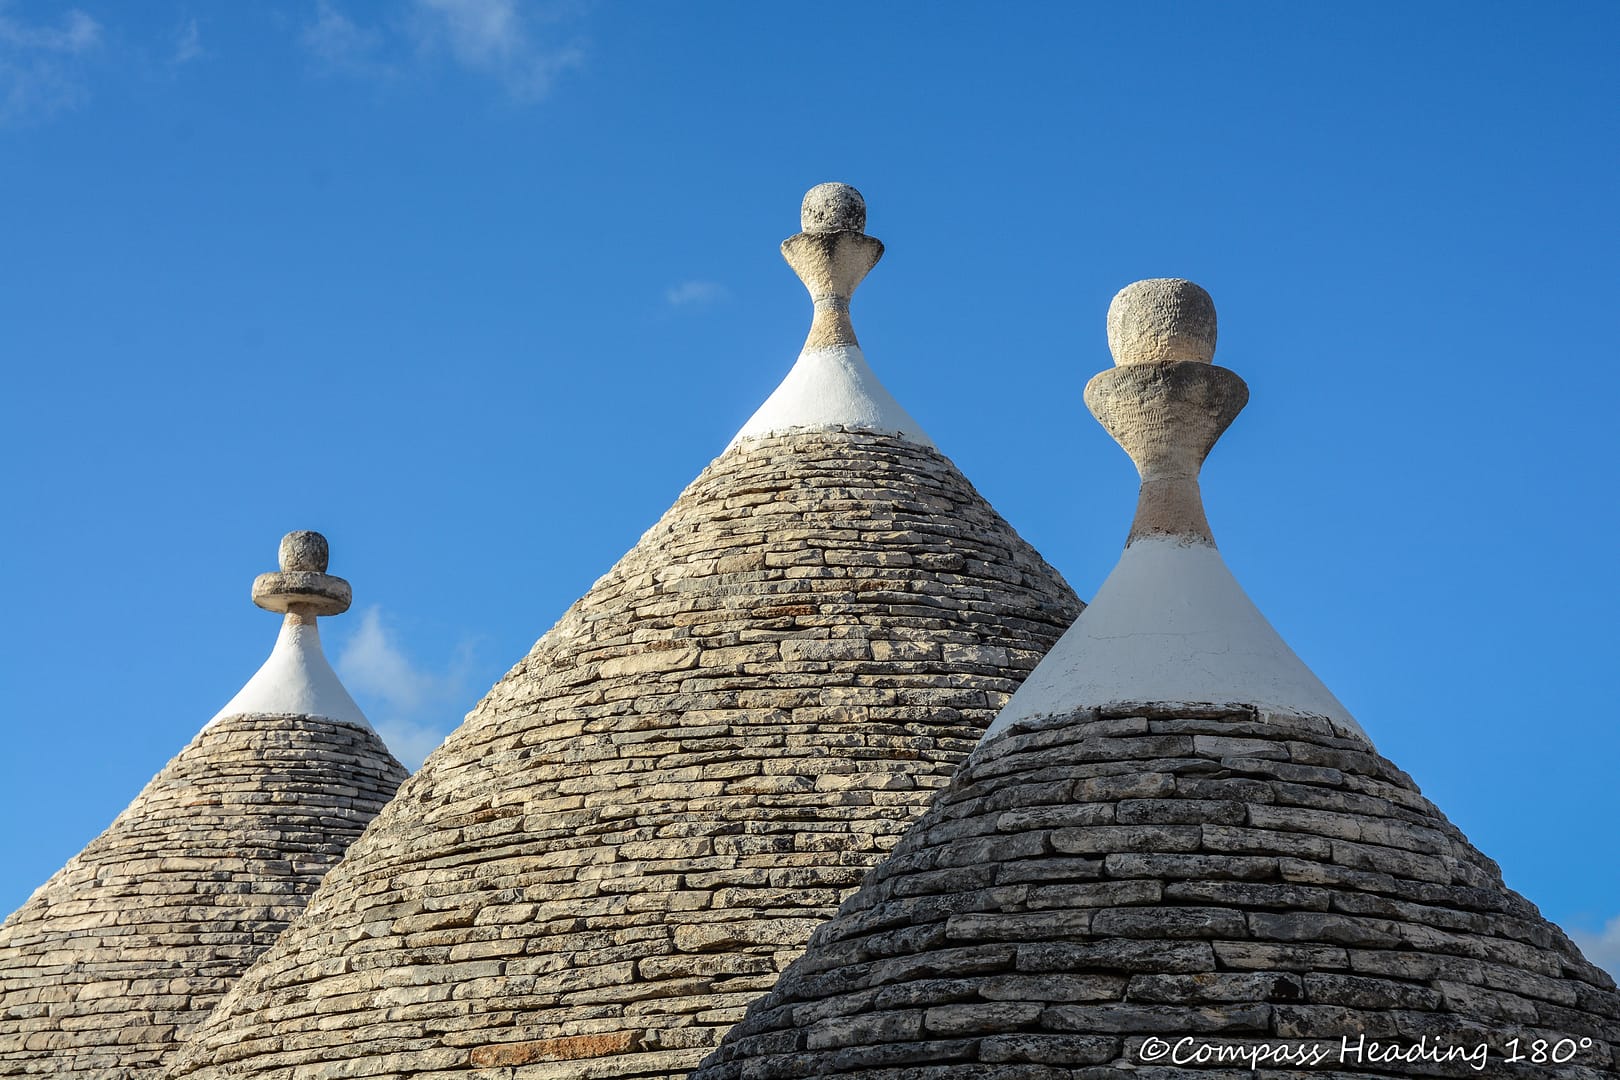 Trullotalojen kartiomaisia kivestä ladottuja kattoja, joiden huipulla on pyöreät koristepallot